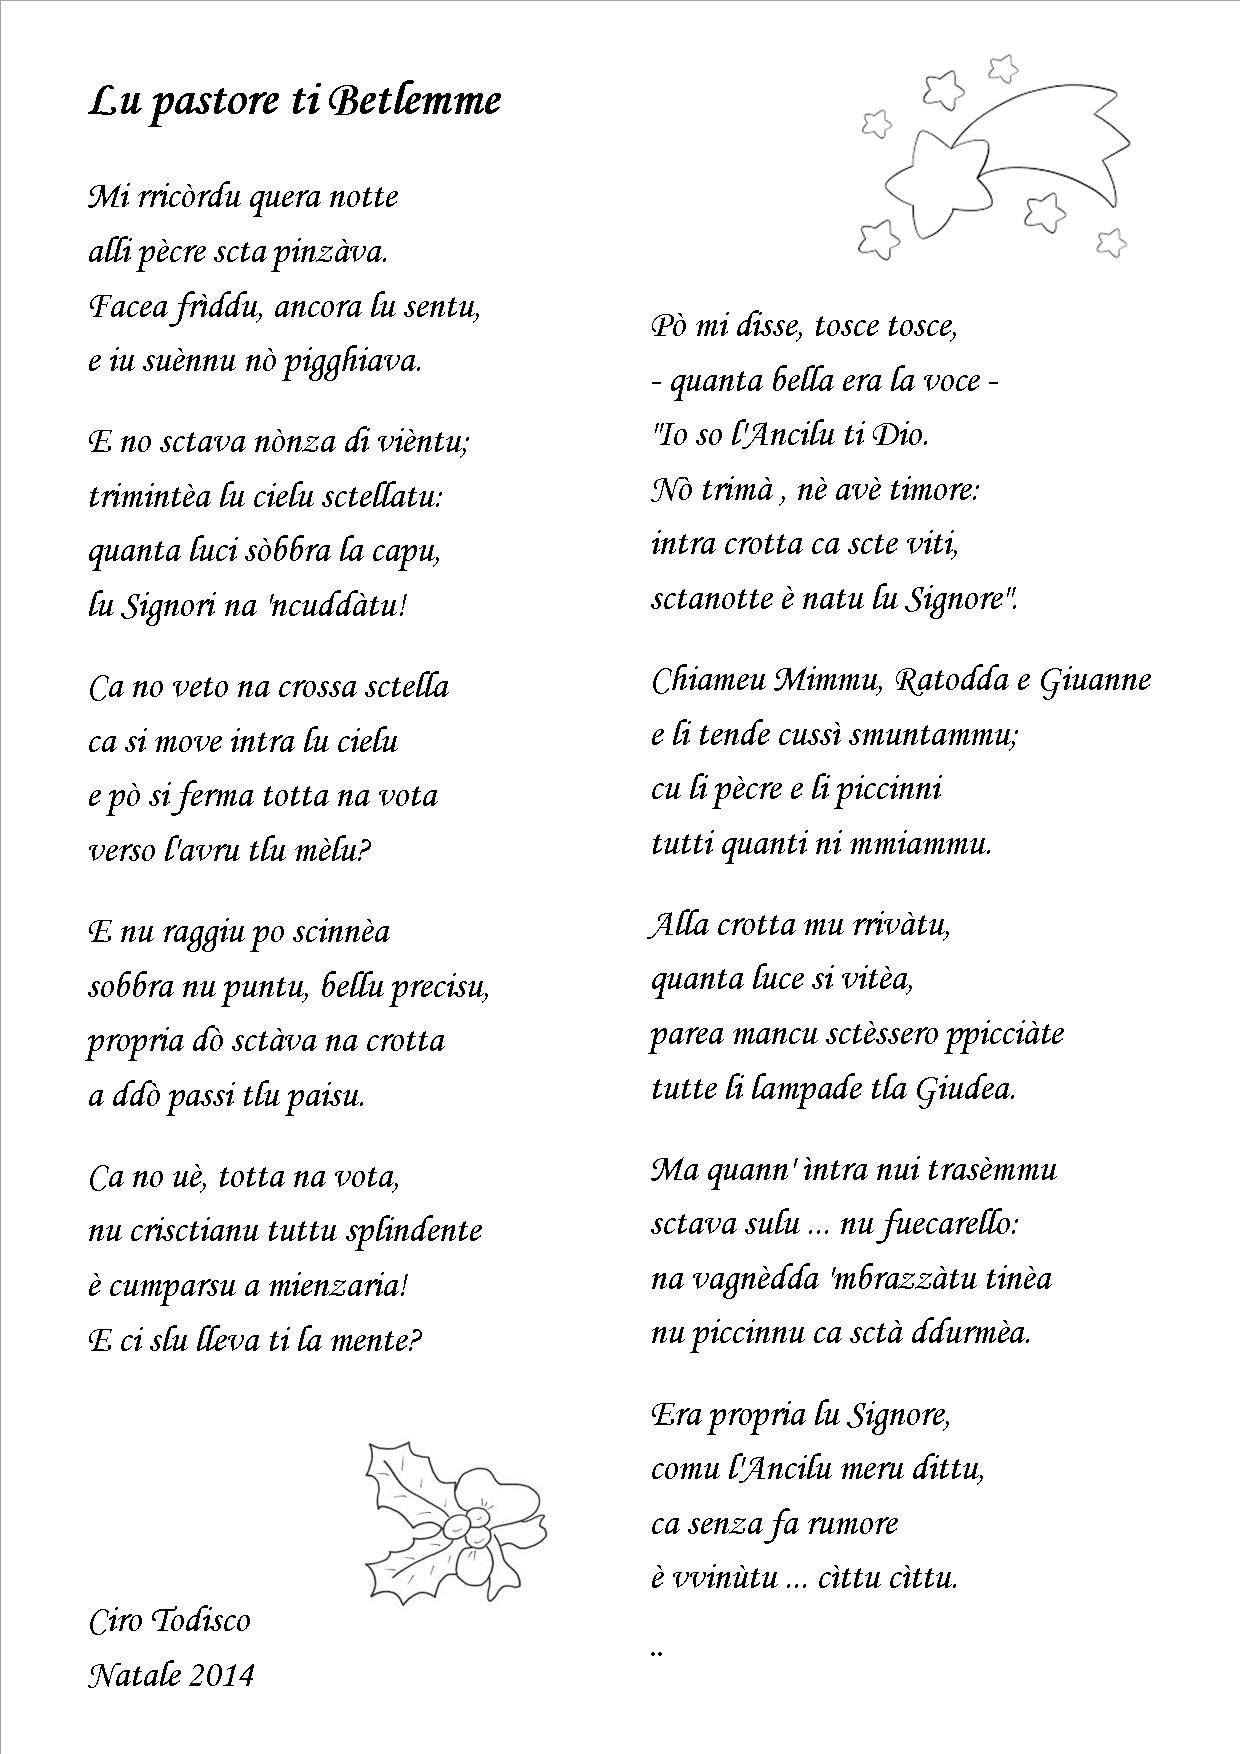 Poesie Di Natale In Dialetto Salentino.Antologia Di Poesie Dialettali Per Natale Grottagliesita Blog